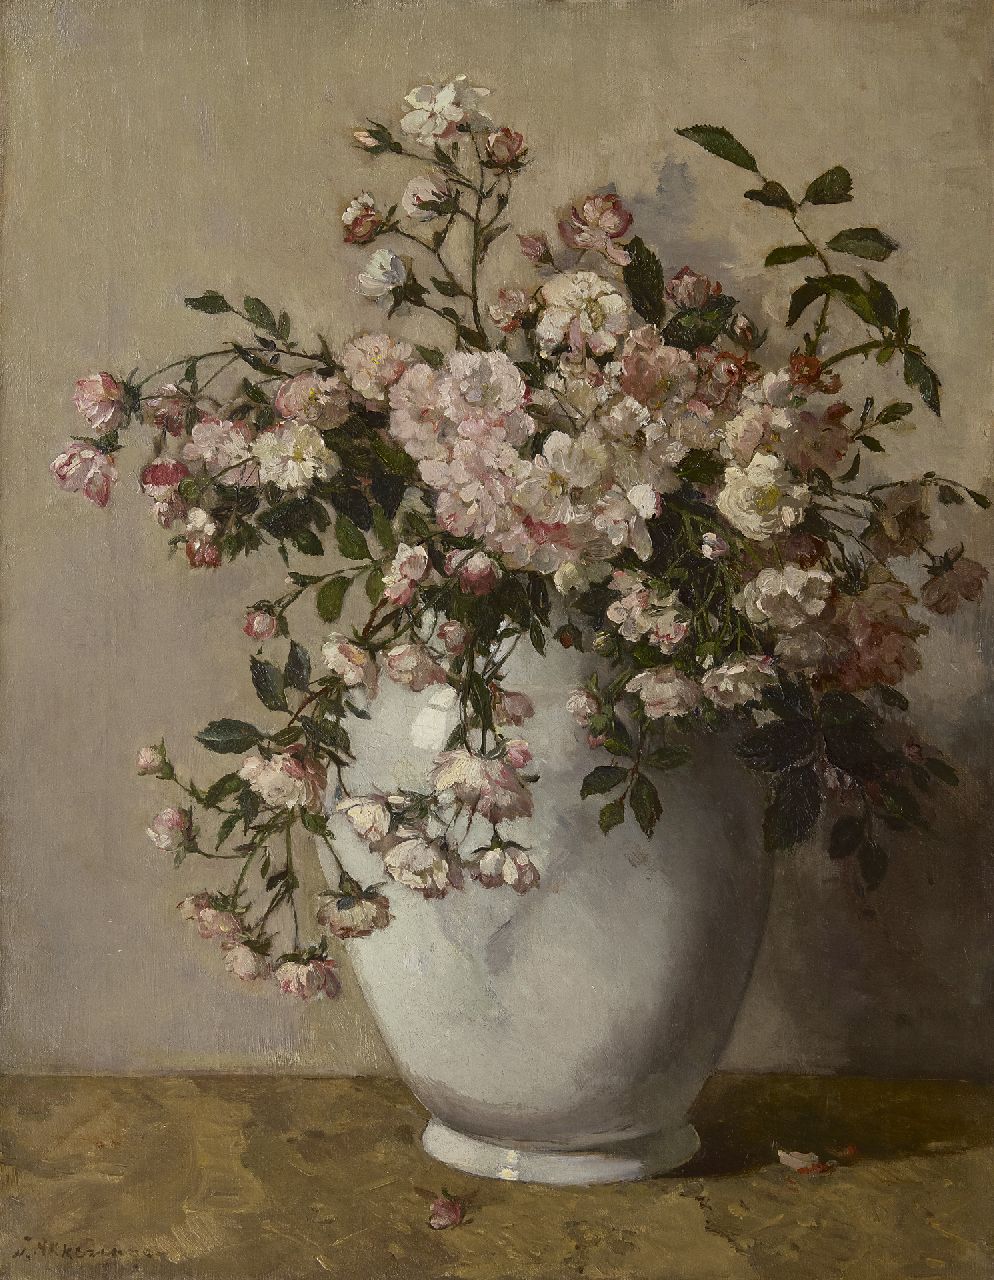 Akkeringa J.E.H.  | 'Johannes Evert' Hendrik Akkeringa, A white vase with spray roses, oil on canvas 54.1 x 42.1 cm, signed l.l.